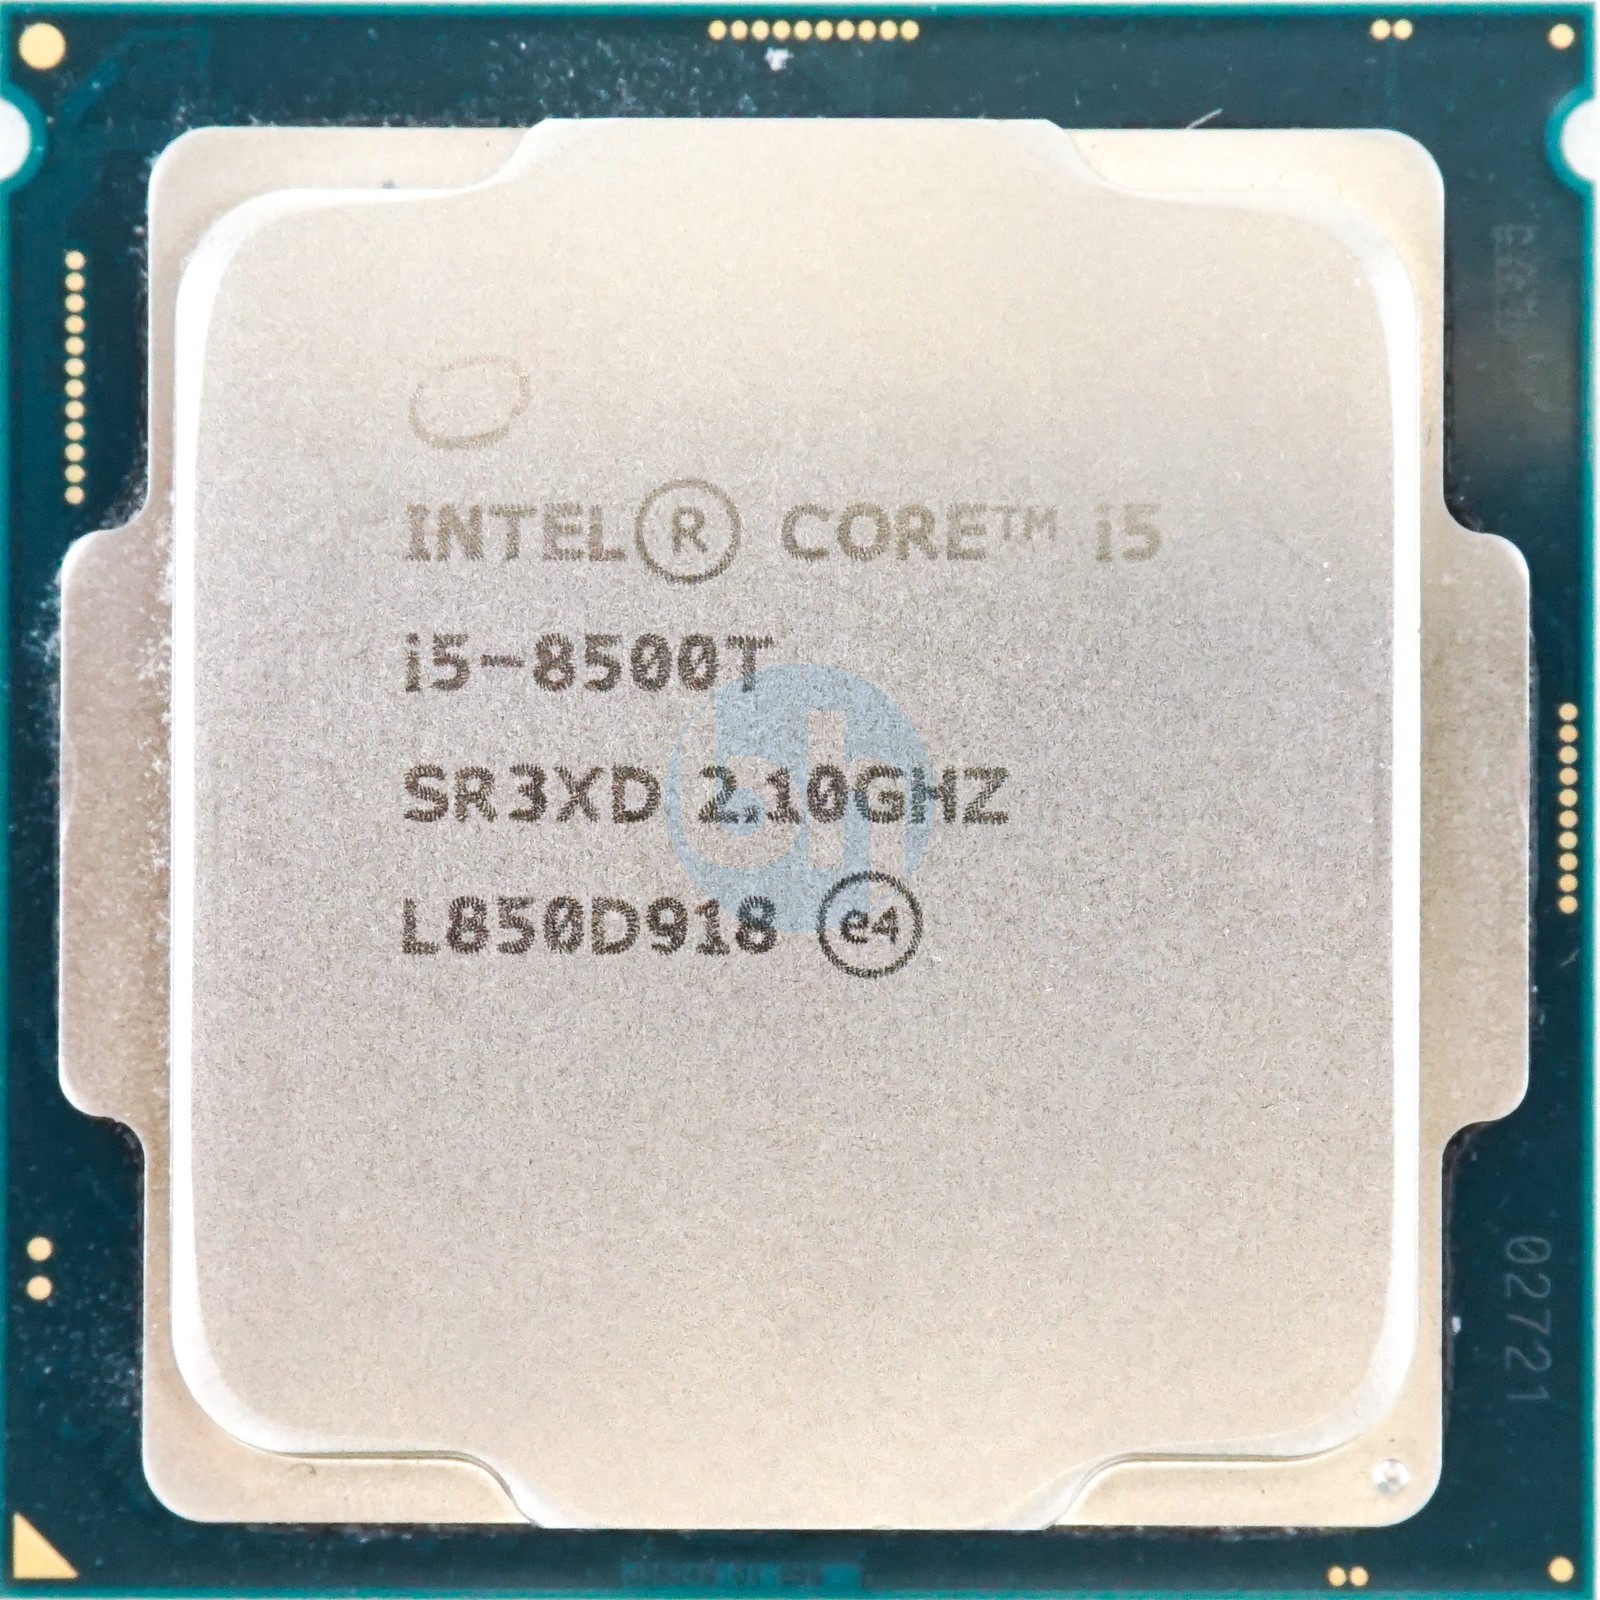 Intel インテル Core i5-8500T CPU SR3XD